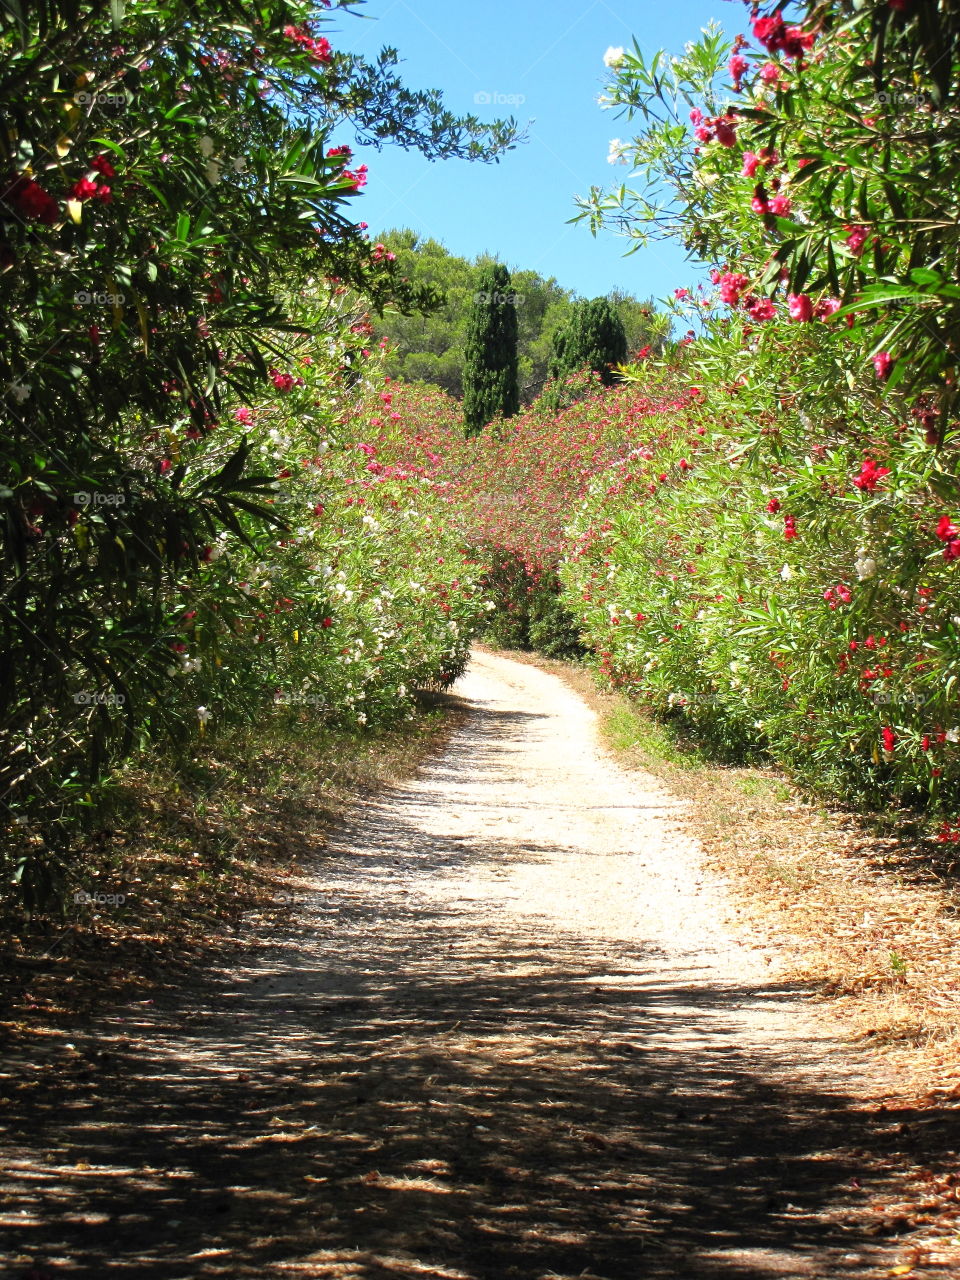 Path between oleander flowers in France